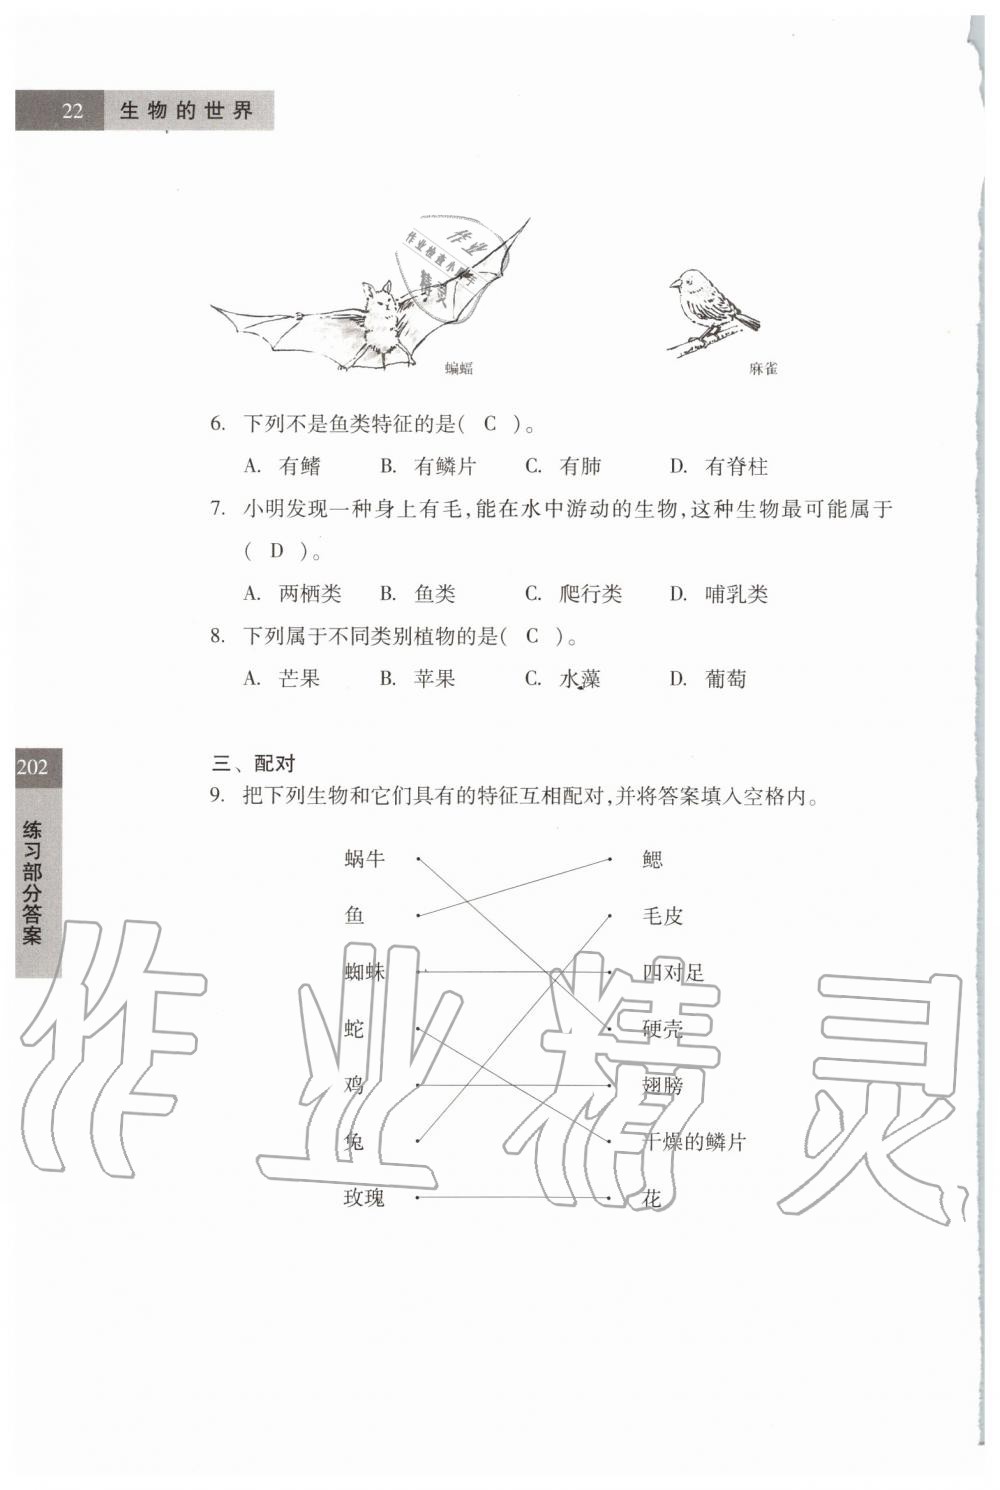 2019年科学练习部分六年级第一学期牛津上海版 第22页